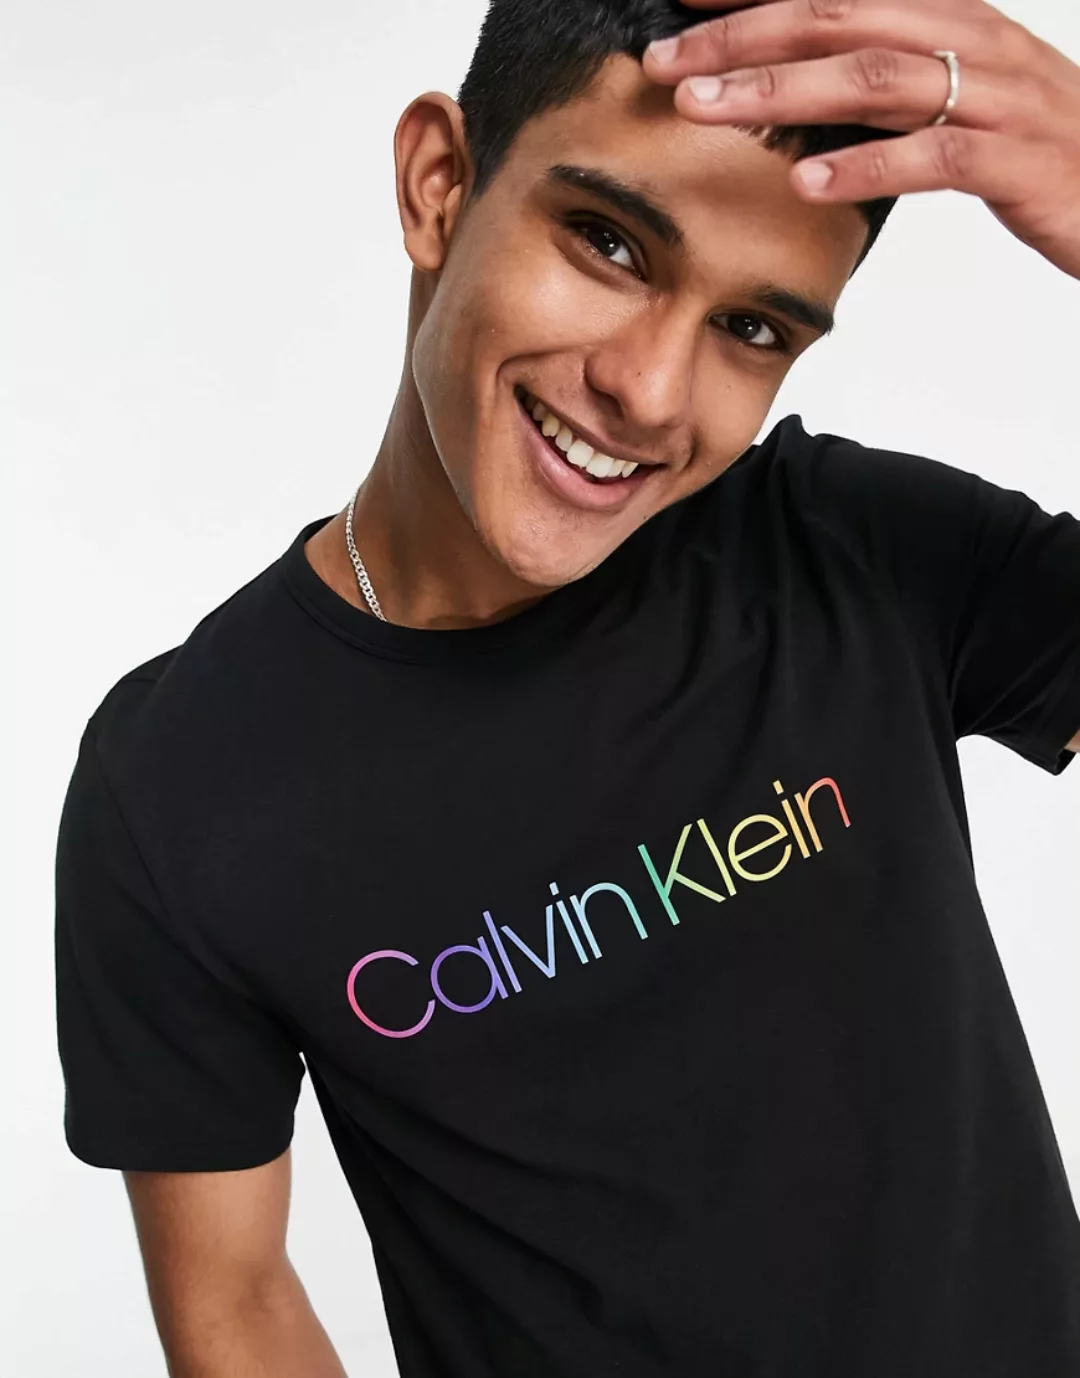 Calvin Klein Underwear Crew T-shirt XL Black günstig online kaufen